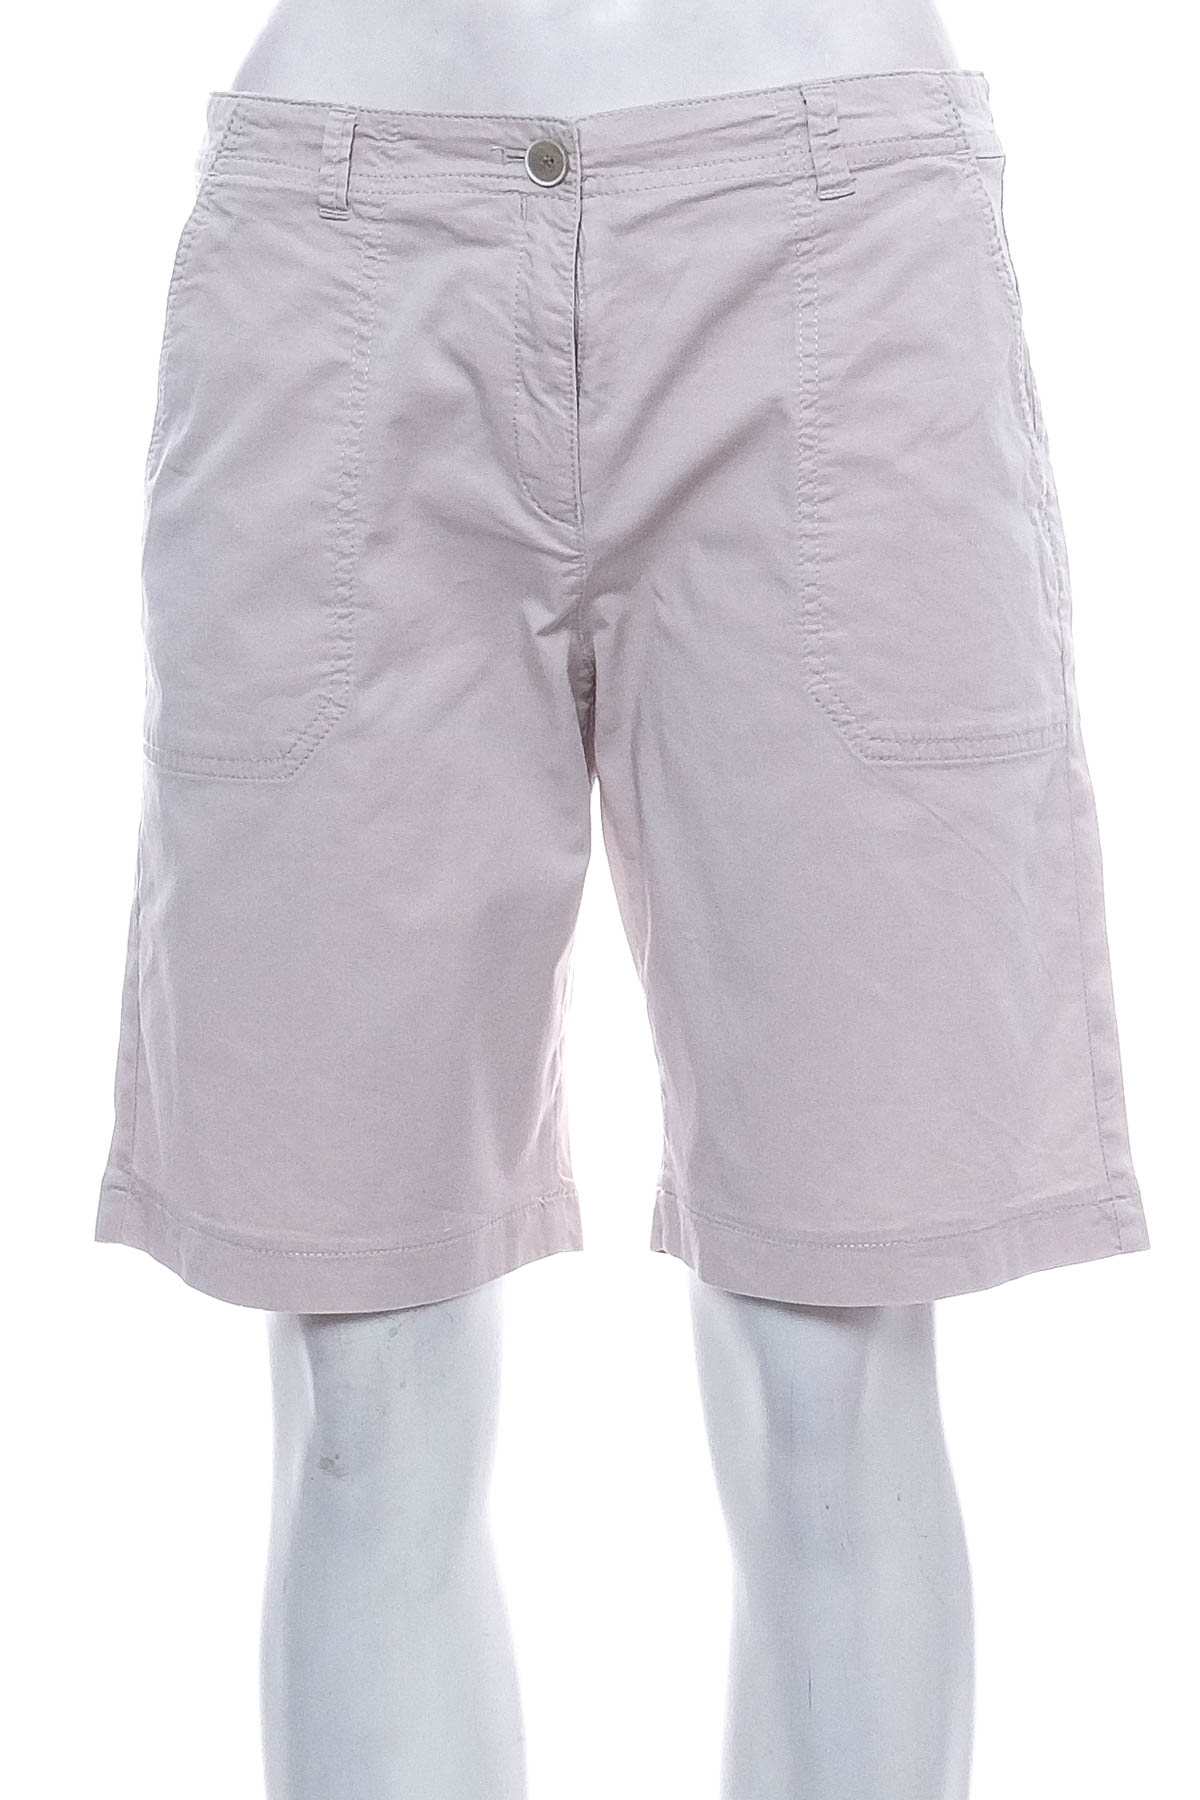 Female shorts - BRAX - 0